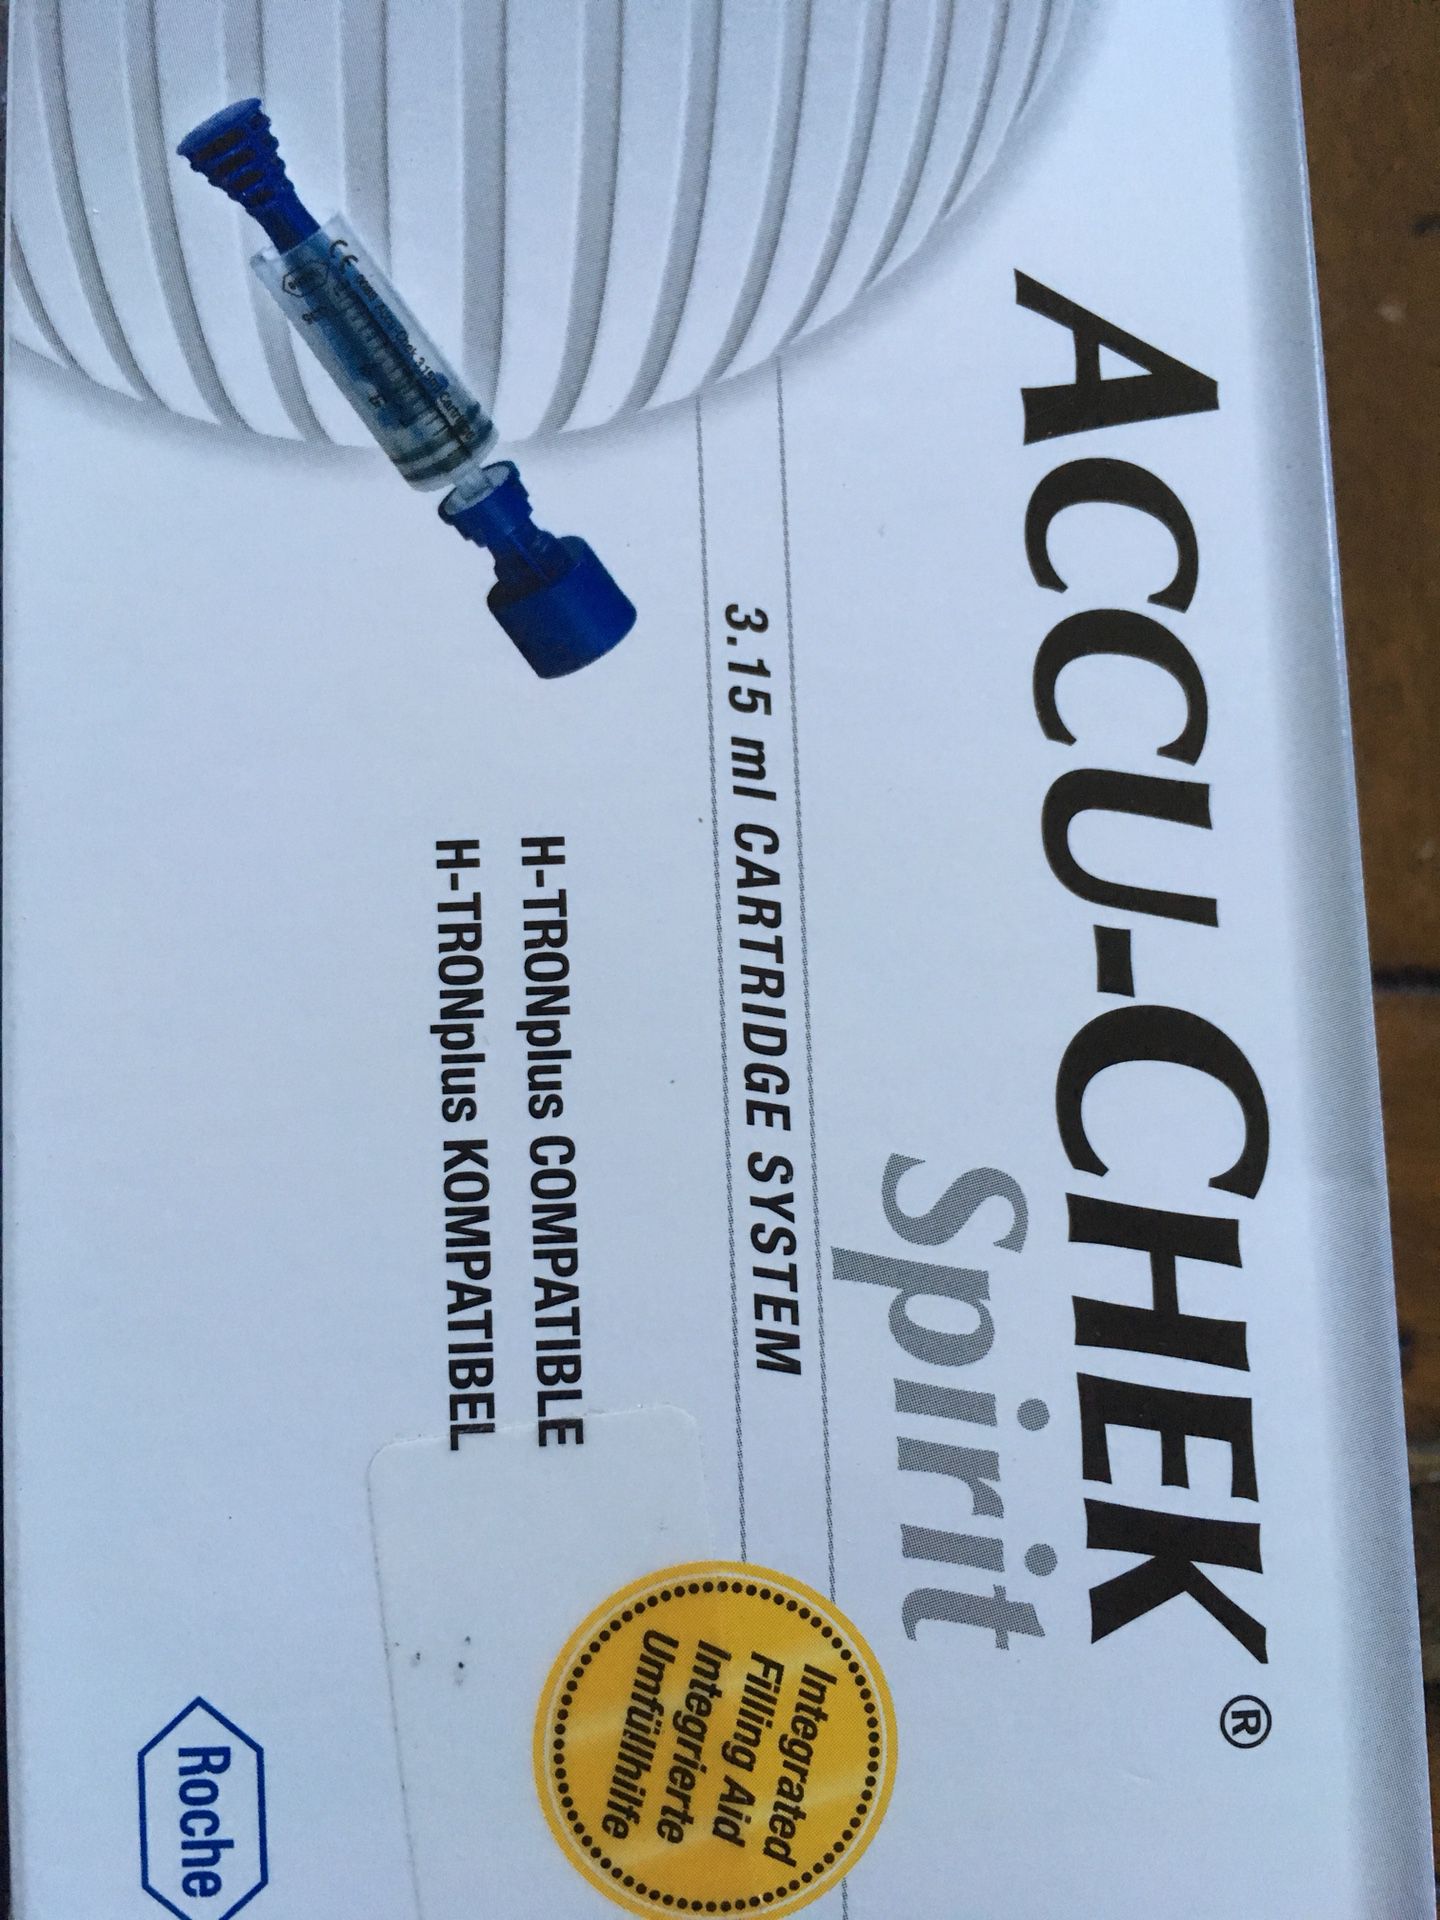 Accu-check